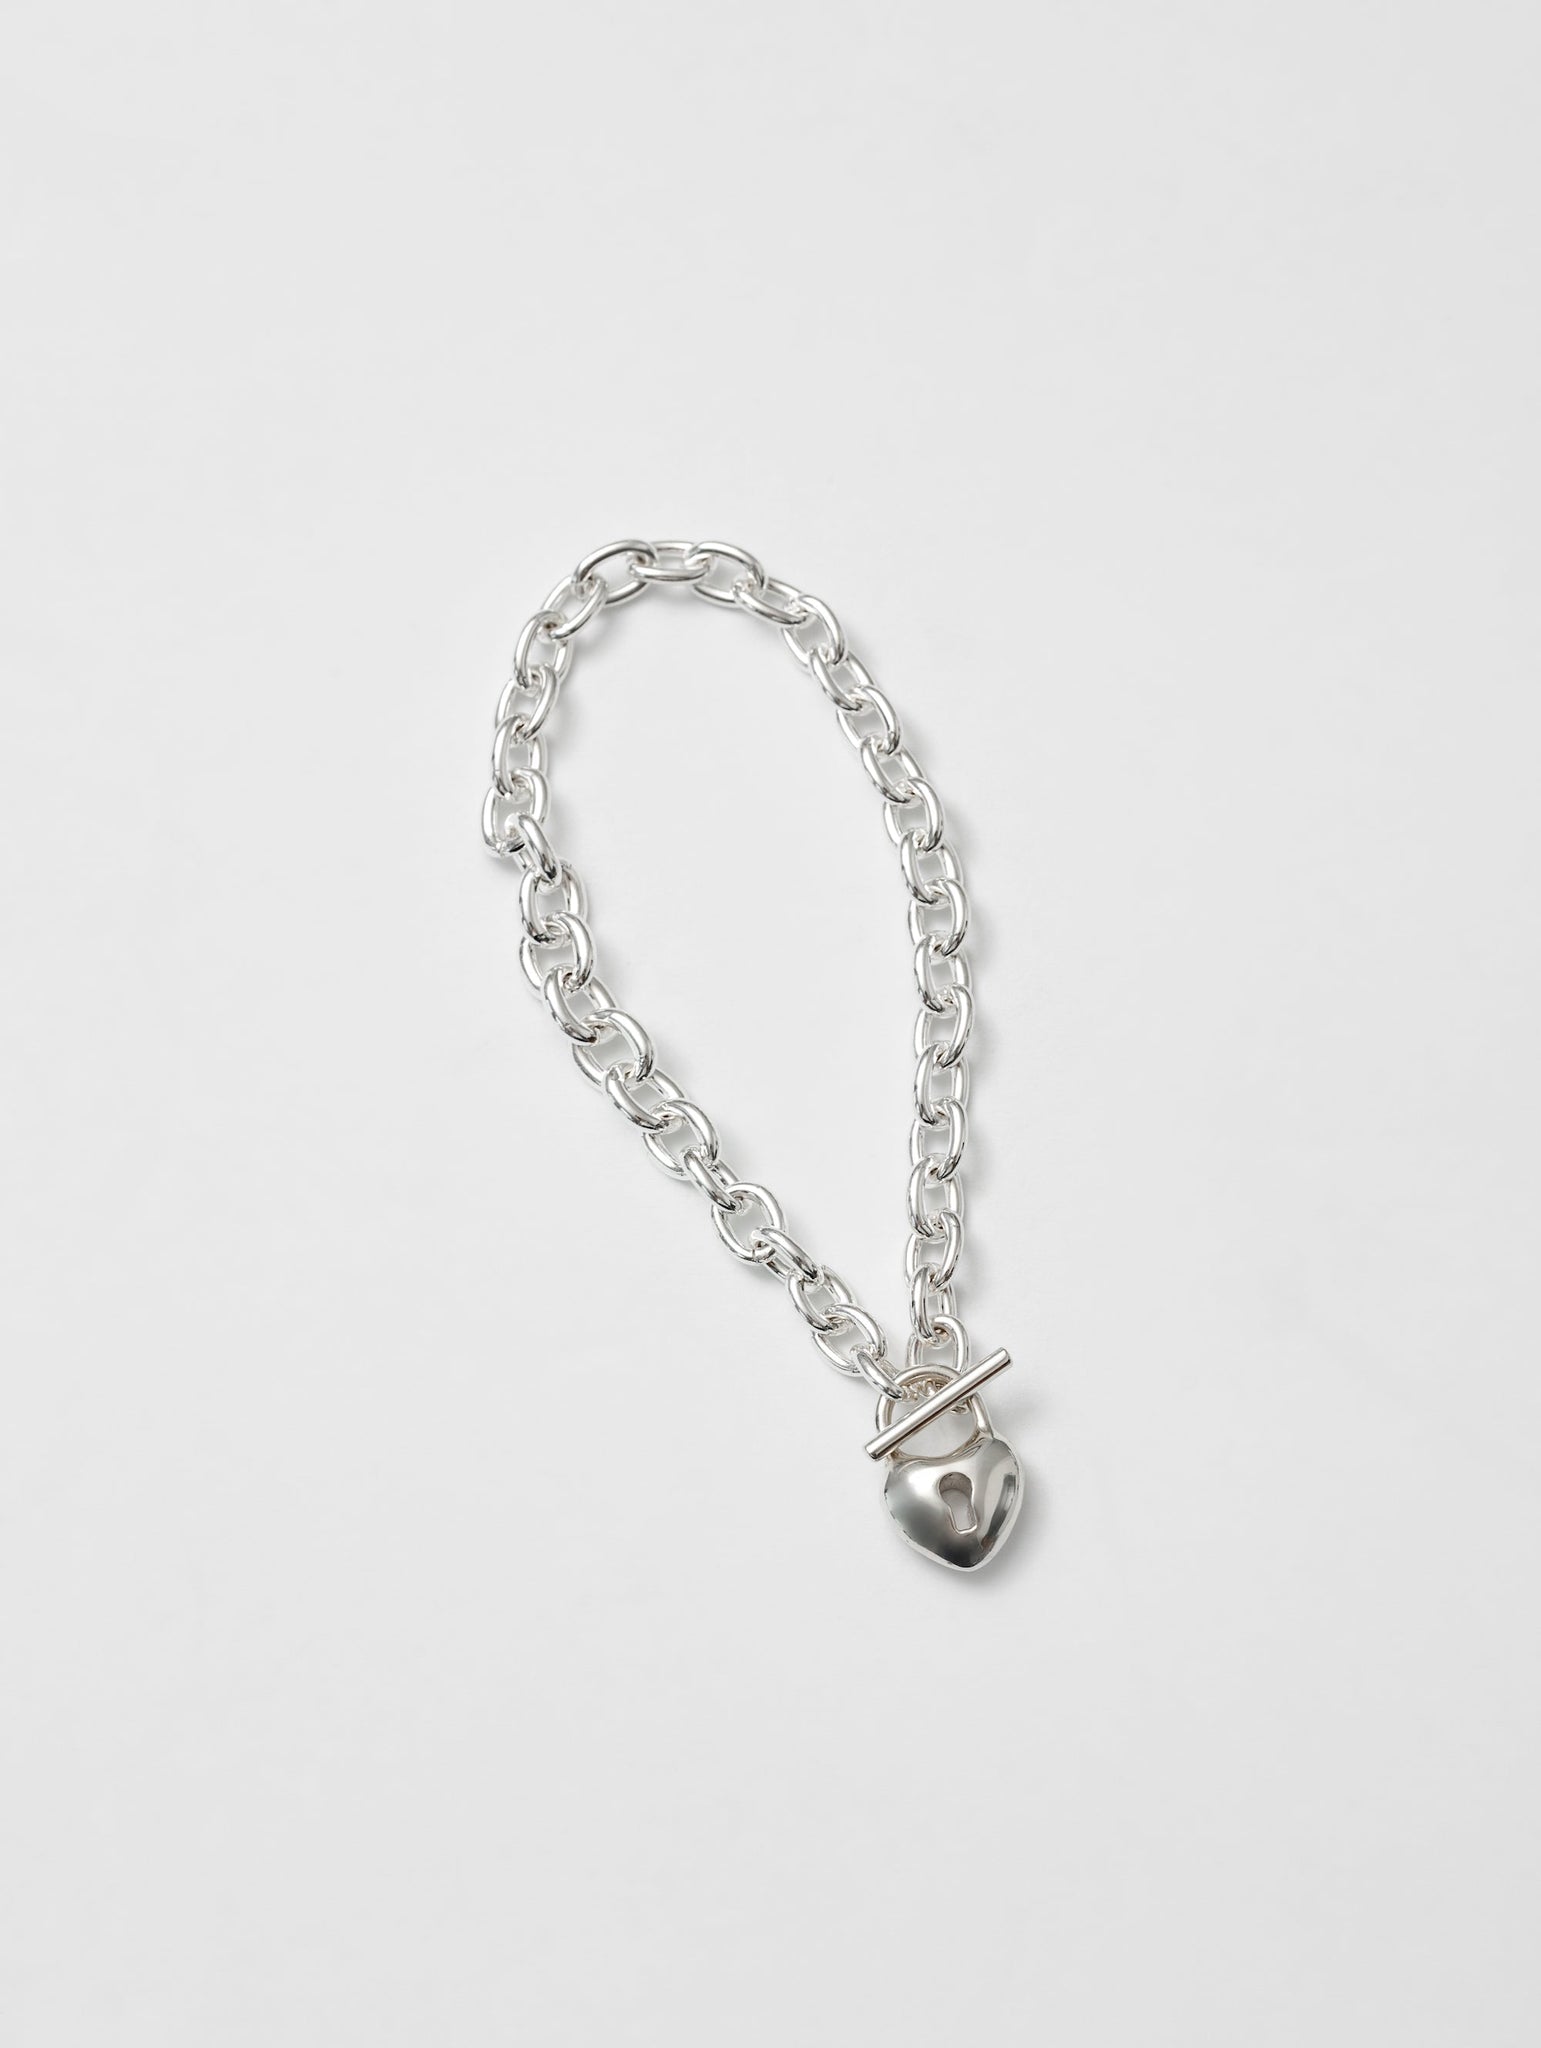 Heart Lock Bracelet in Sterling Silver